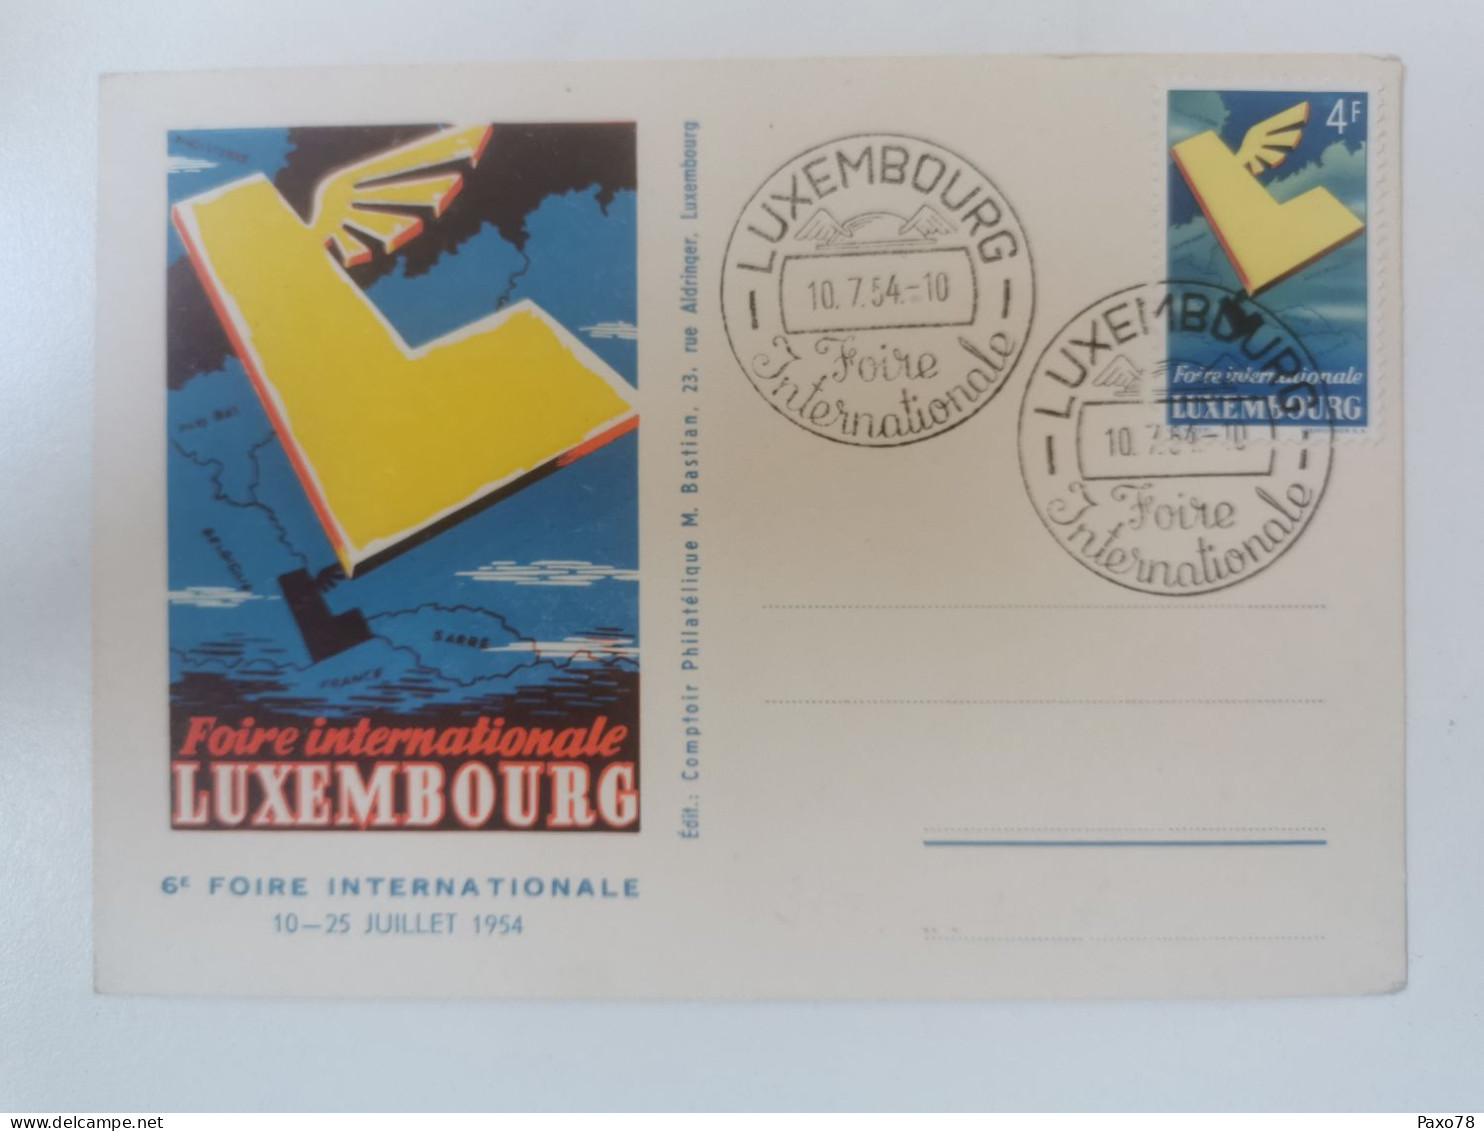 6ème Foire Internationale Luxembourg 1954 - Commemoration Cards